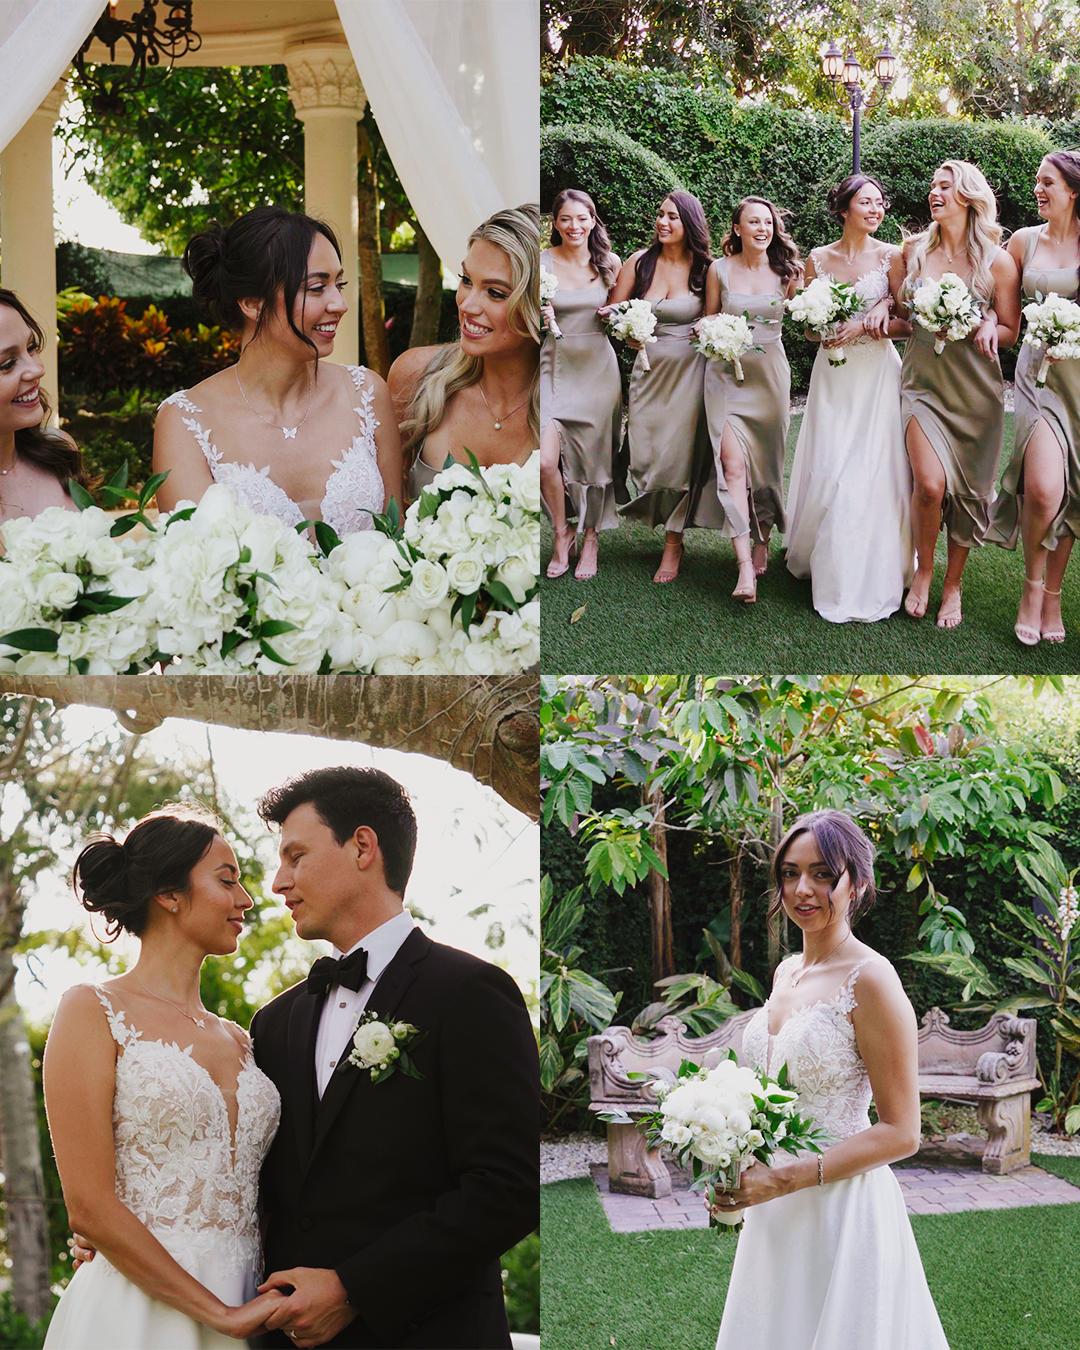 Joanna and Eric, wedding at Wedding at Villa Toscana Miami, FL image 3